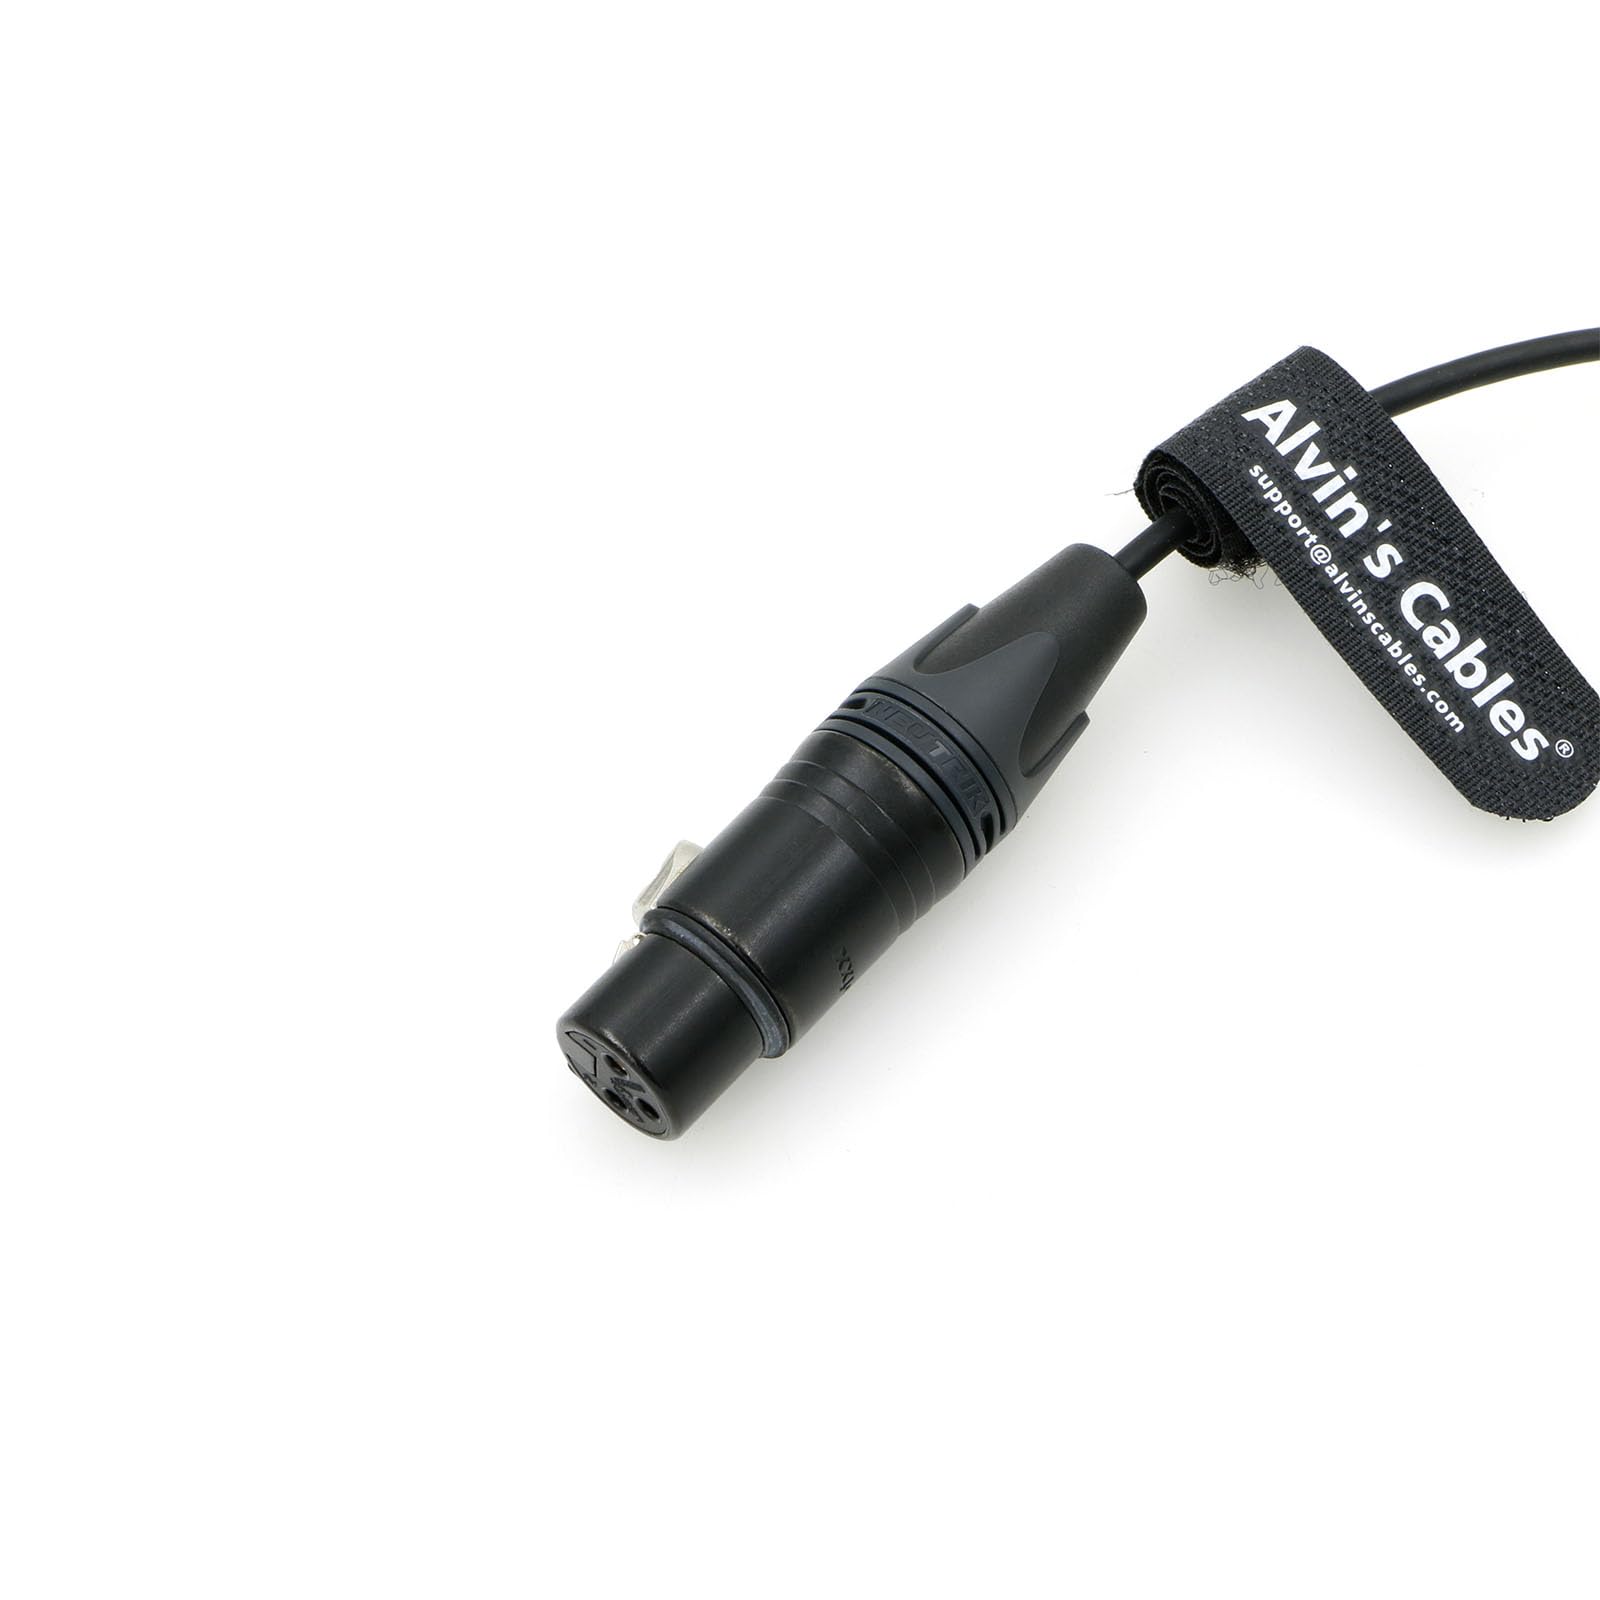 Alvin's Cables Audio Cable for ARRI-Alexa-Mini-LF Camera 6-Pin Male to XLR 3-Pin Female 25cm|8inches